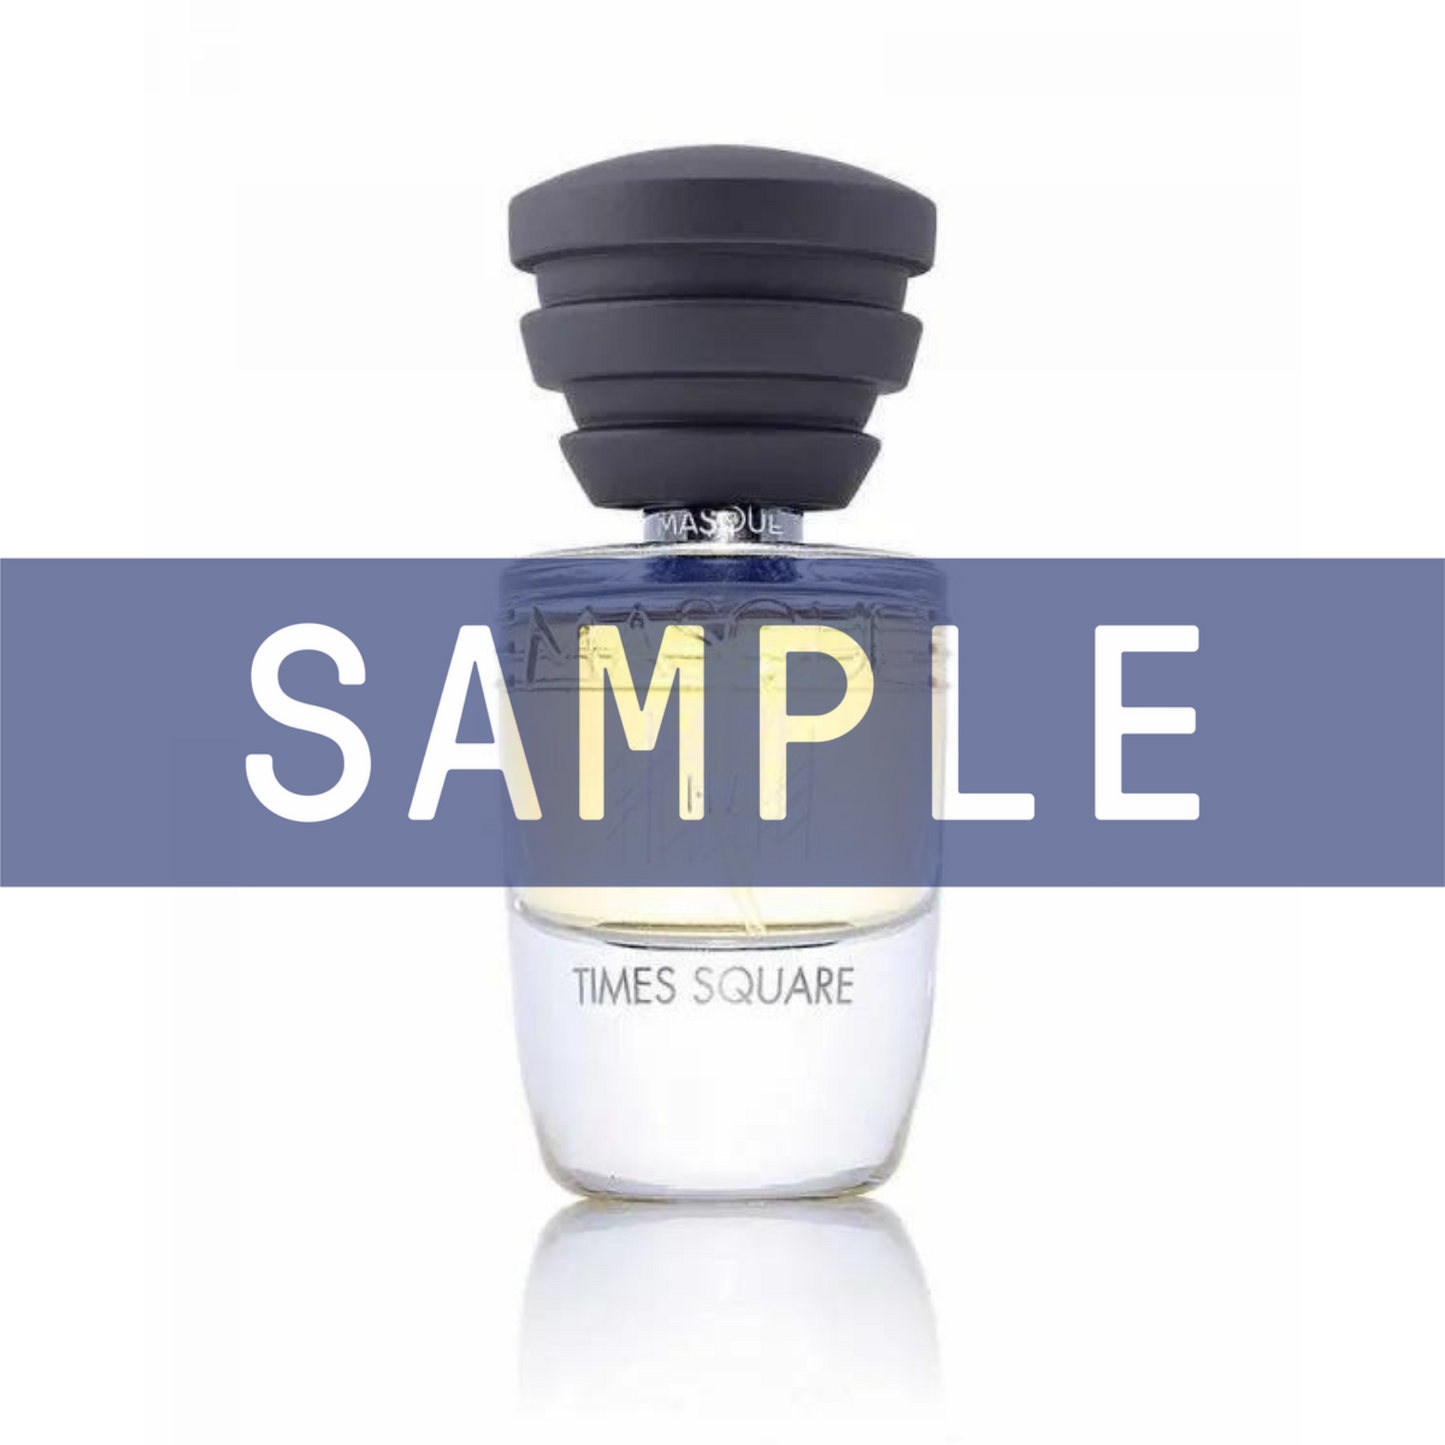 Primary Image of Sample - Times Square Eau De Parfum